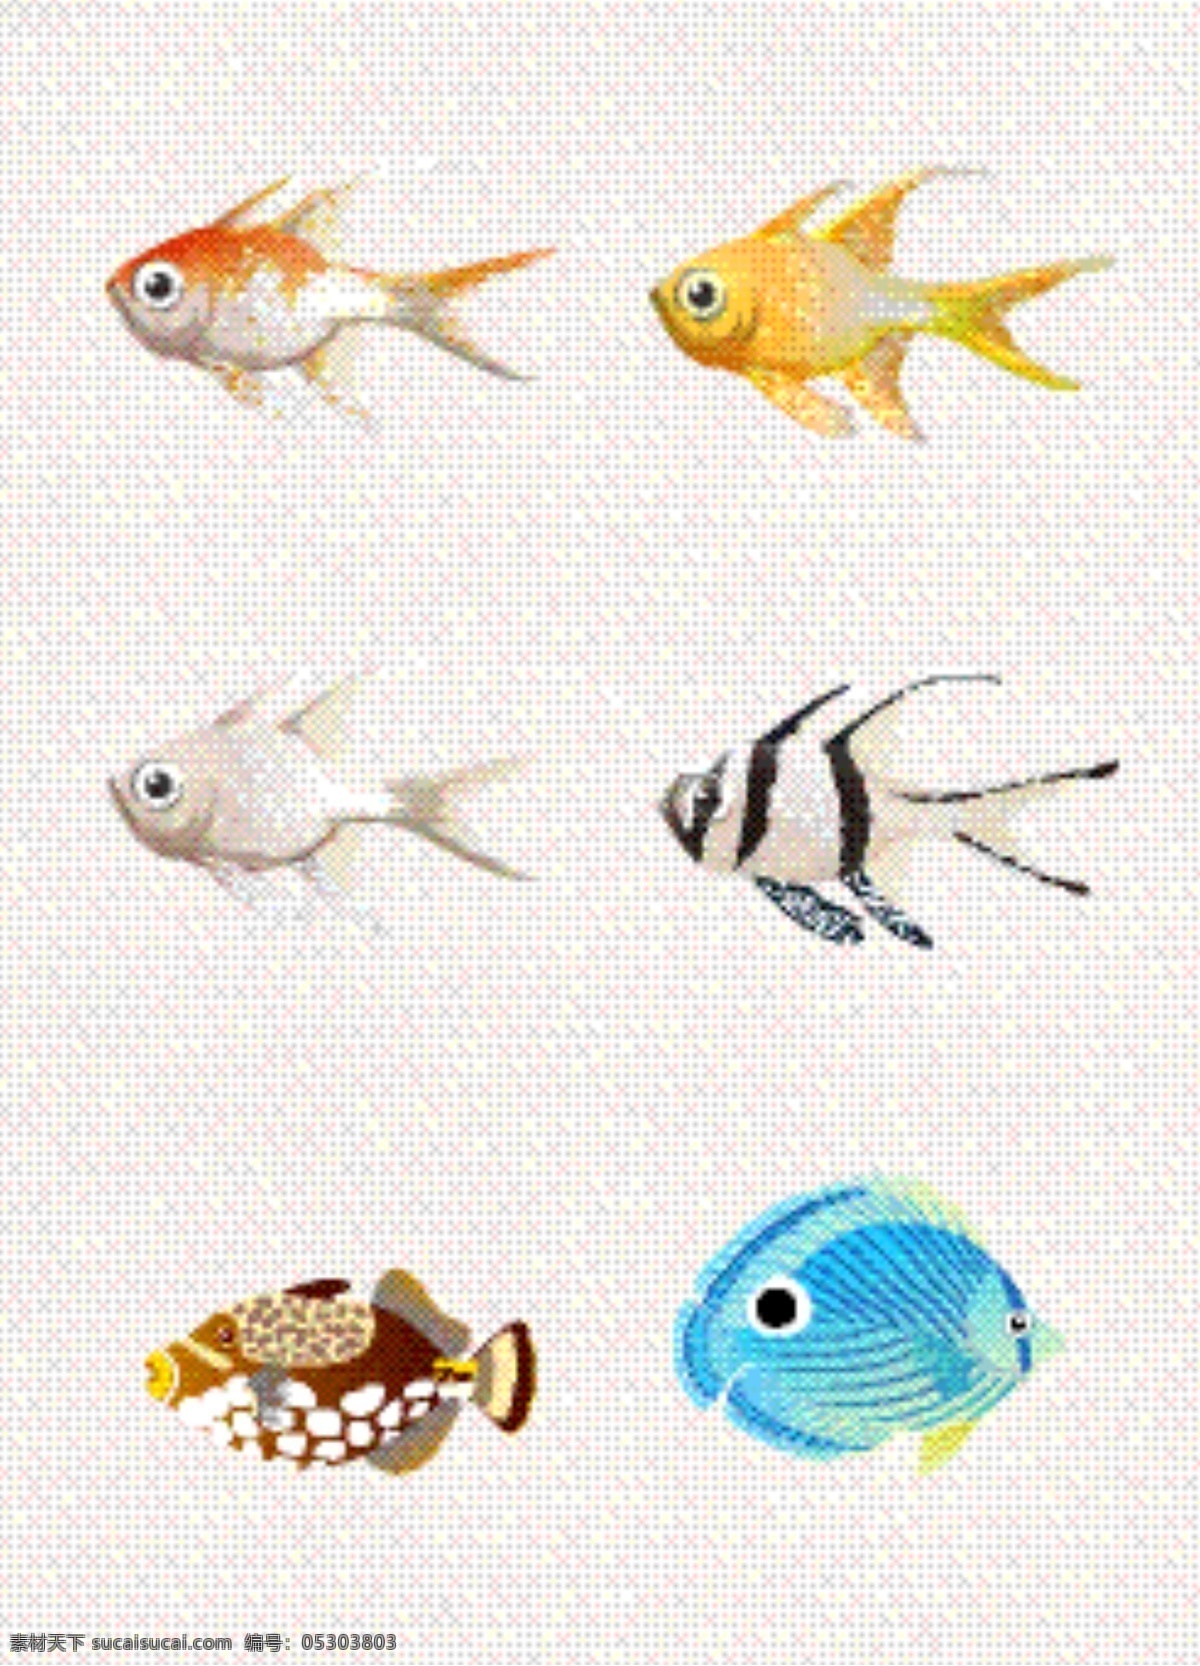 卡通 可爱 鱼类 鱼群 小清新 图案 创意 图标 标志 鱼群卡通 彩色 装饰 简约 扁平化